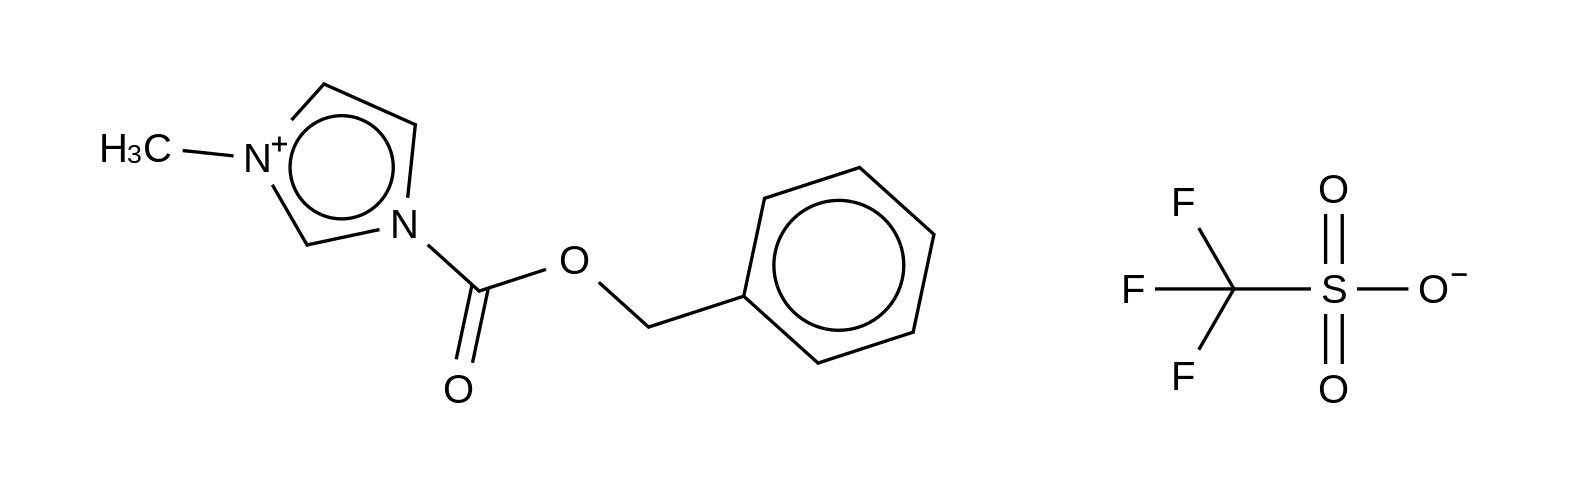 1-Carbobenzoxy-3-methylimidazolium Trifluoromethanesulfonate